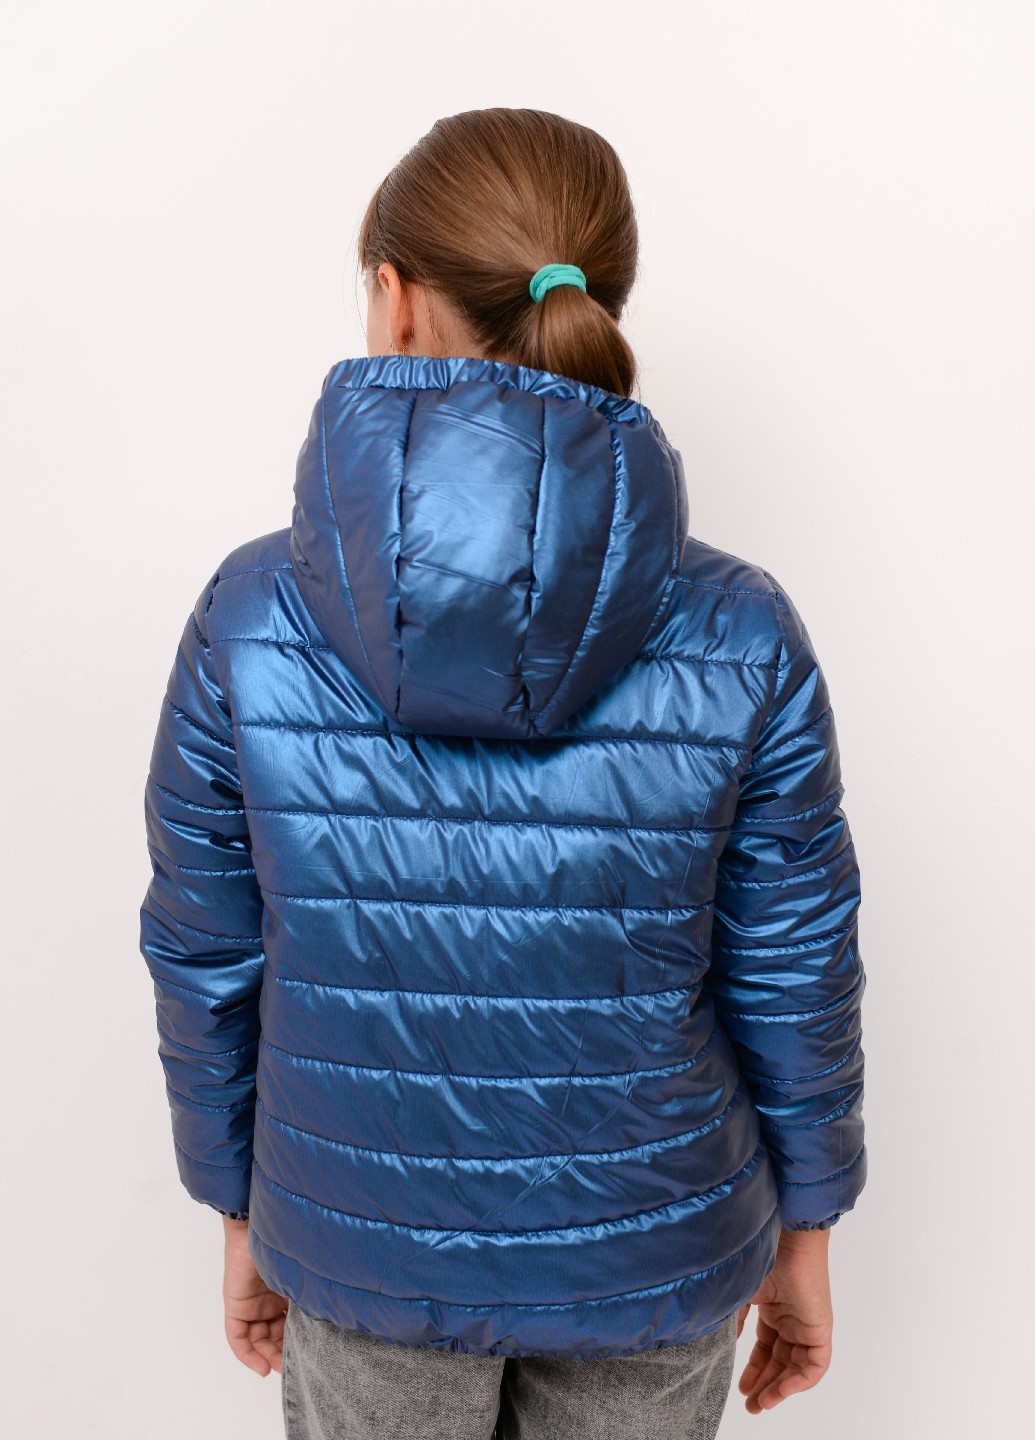 Стильная куртка для девочки осень/весна синяя 282/712 оптом